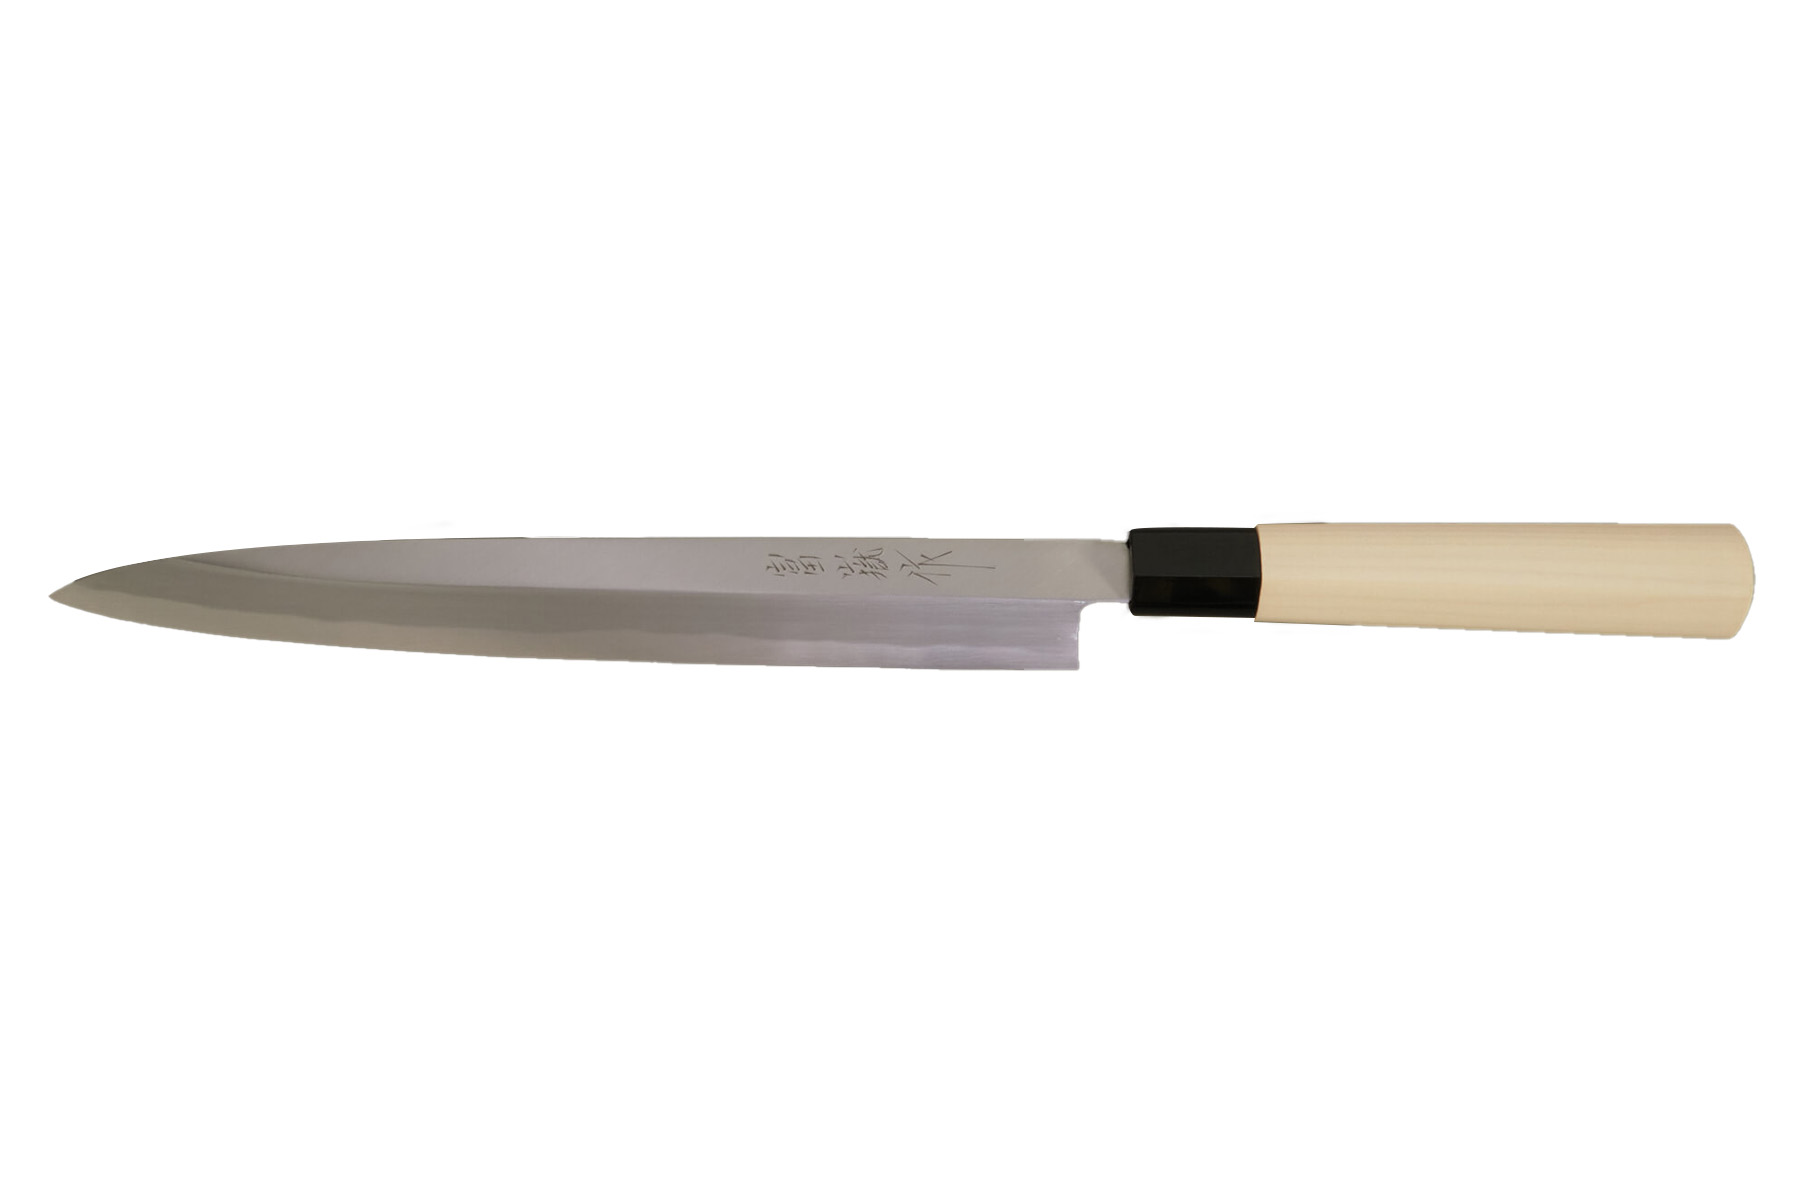 Couteaux de cuisine Japonais – L'Aiguisoir